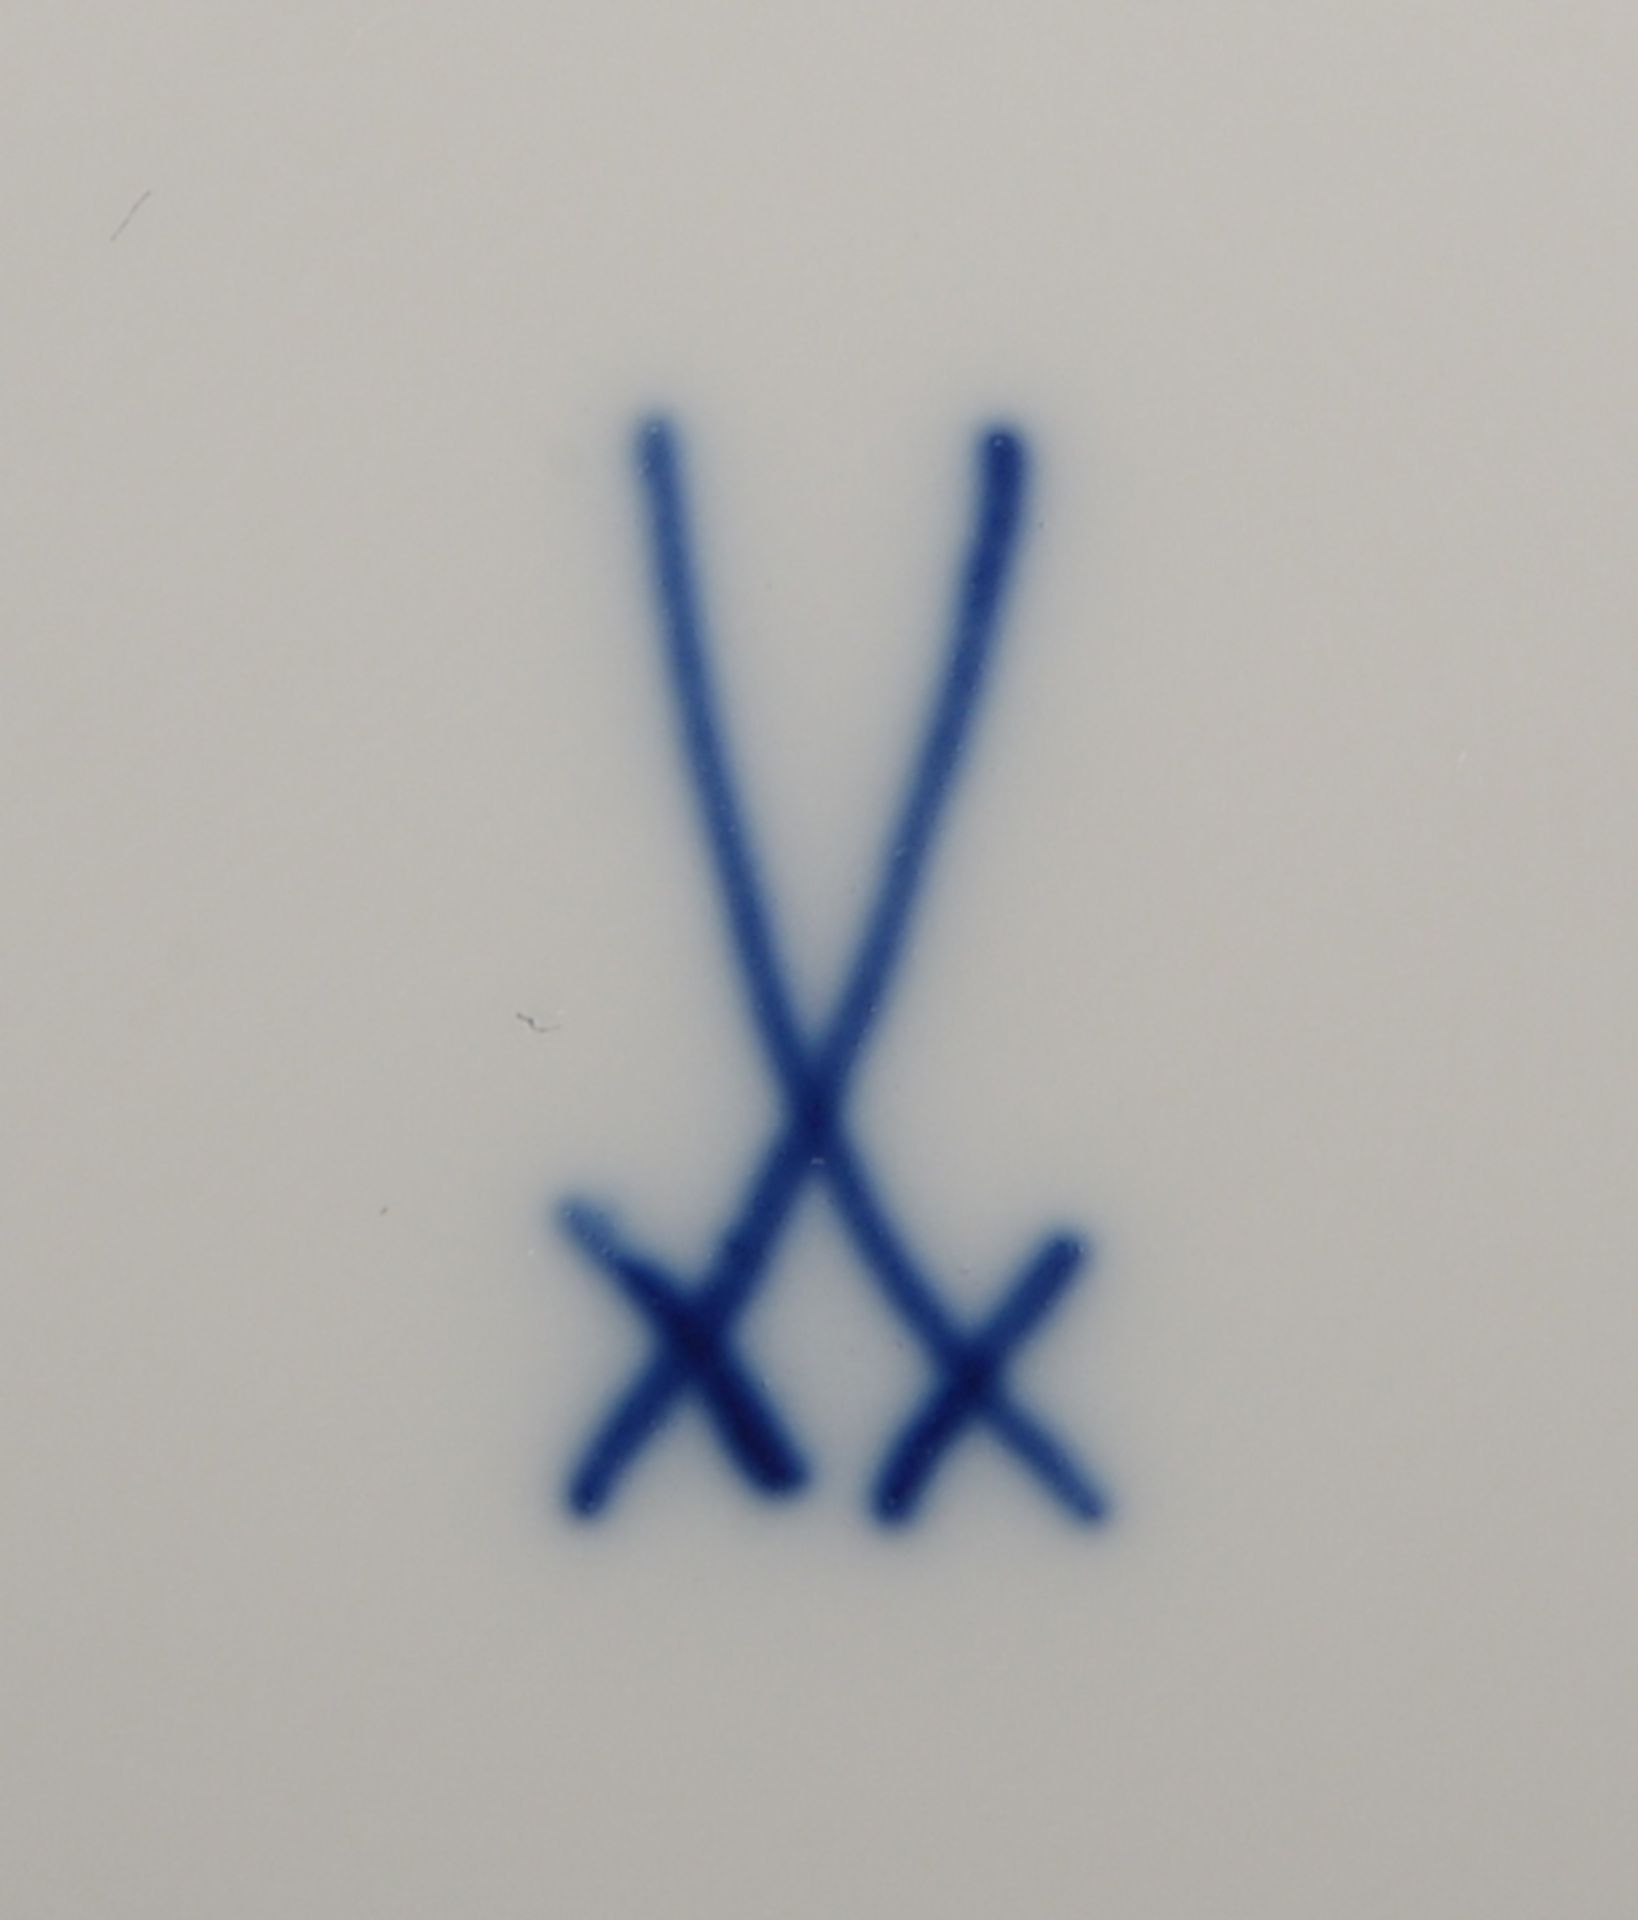 Meissen, 2 Teller/Schalen, durchbrochene Fahne, mit Zwiebelmuster, I. Wahl; Durchmesser Ø 21,5 cm, - Bild 2 aus 2